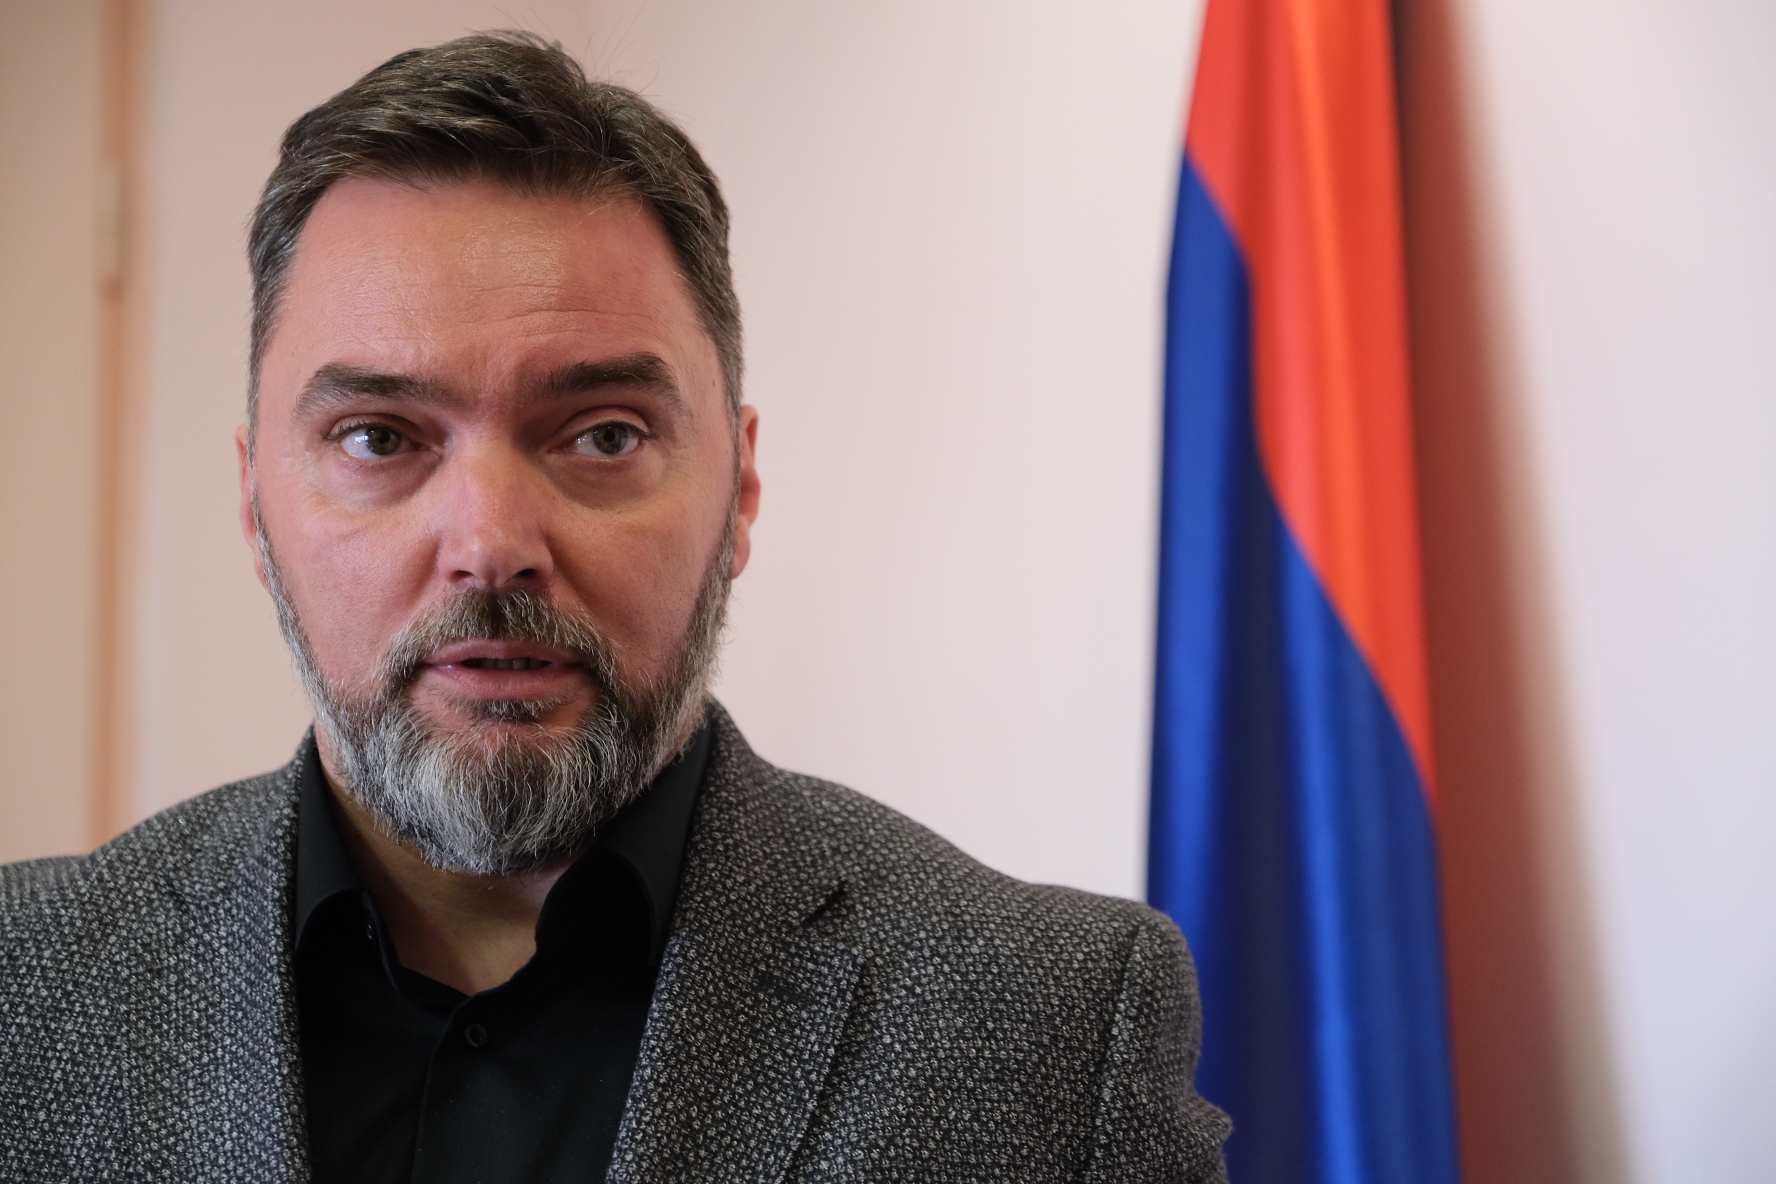 Picture for Министар Кошарац: Приоритетно питање је наставак извоза пољопривредних производа из Србије у БиХ  